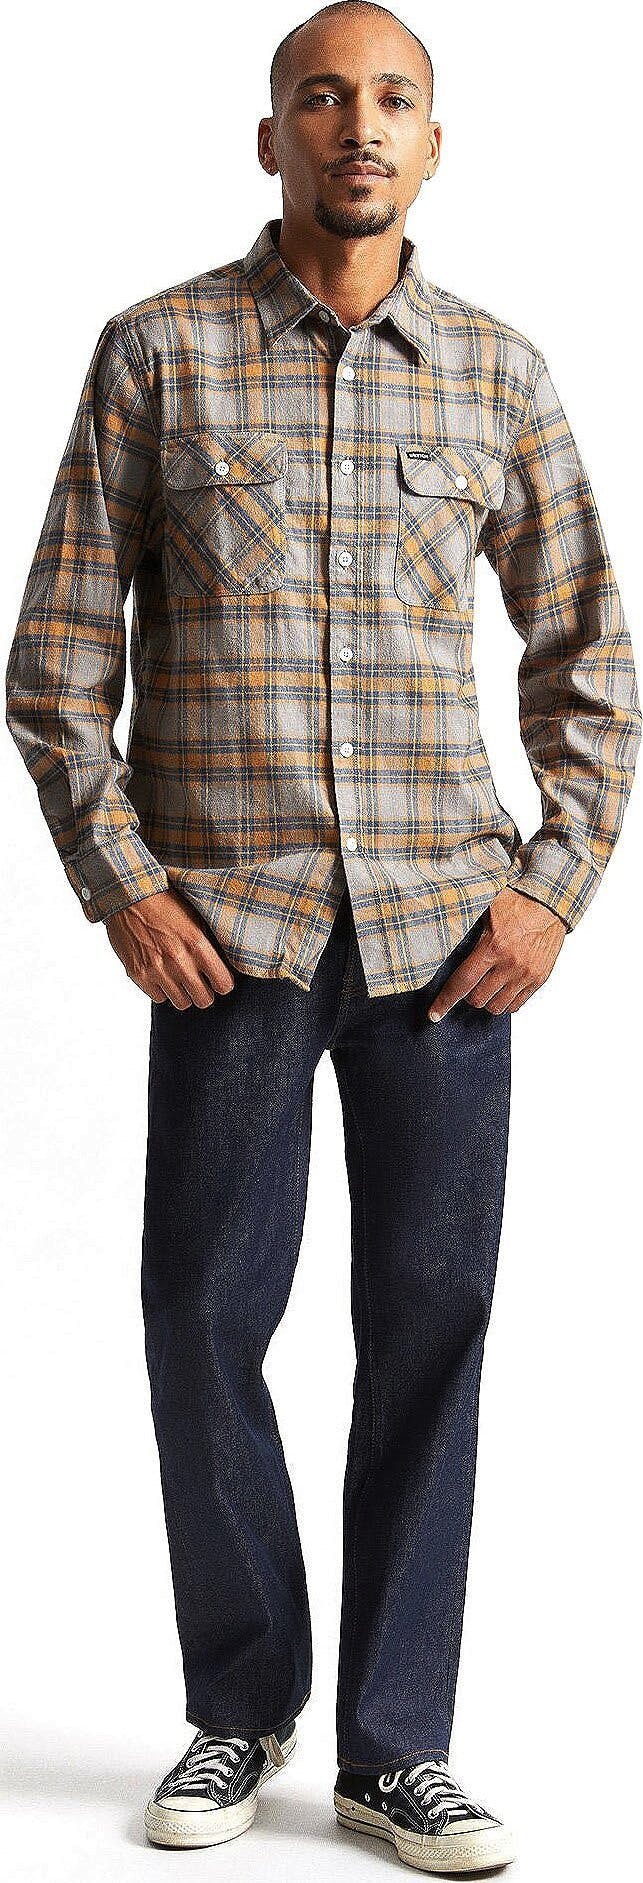 Numéro de l'image de la galerie de produits 3 pour le produit Bowery Stretch X Flannel à manches longues - Homme